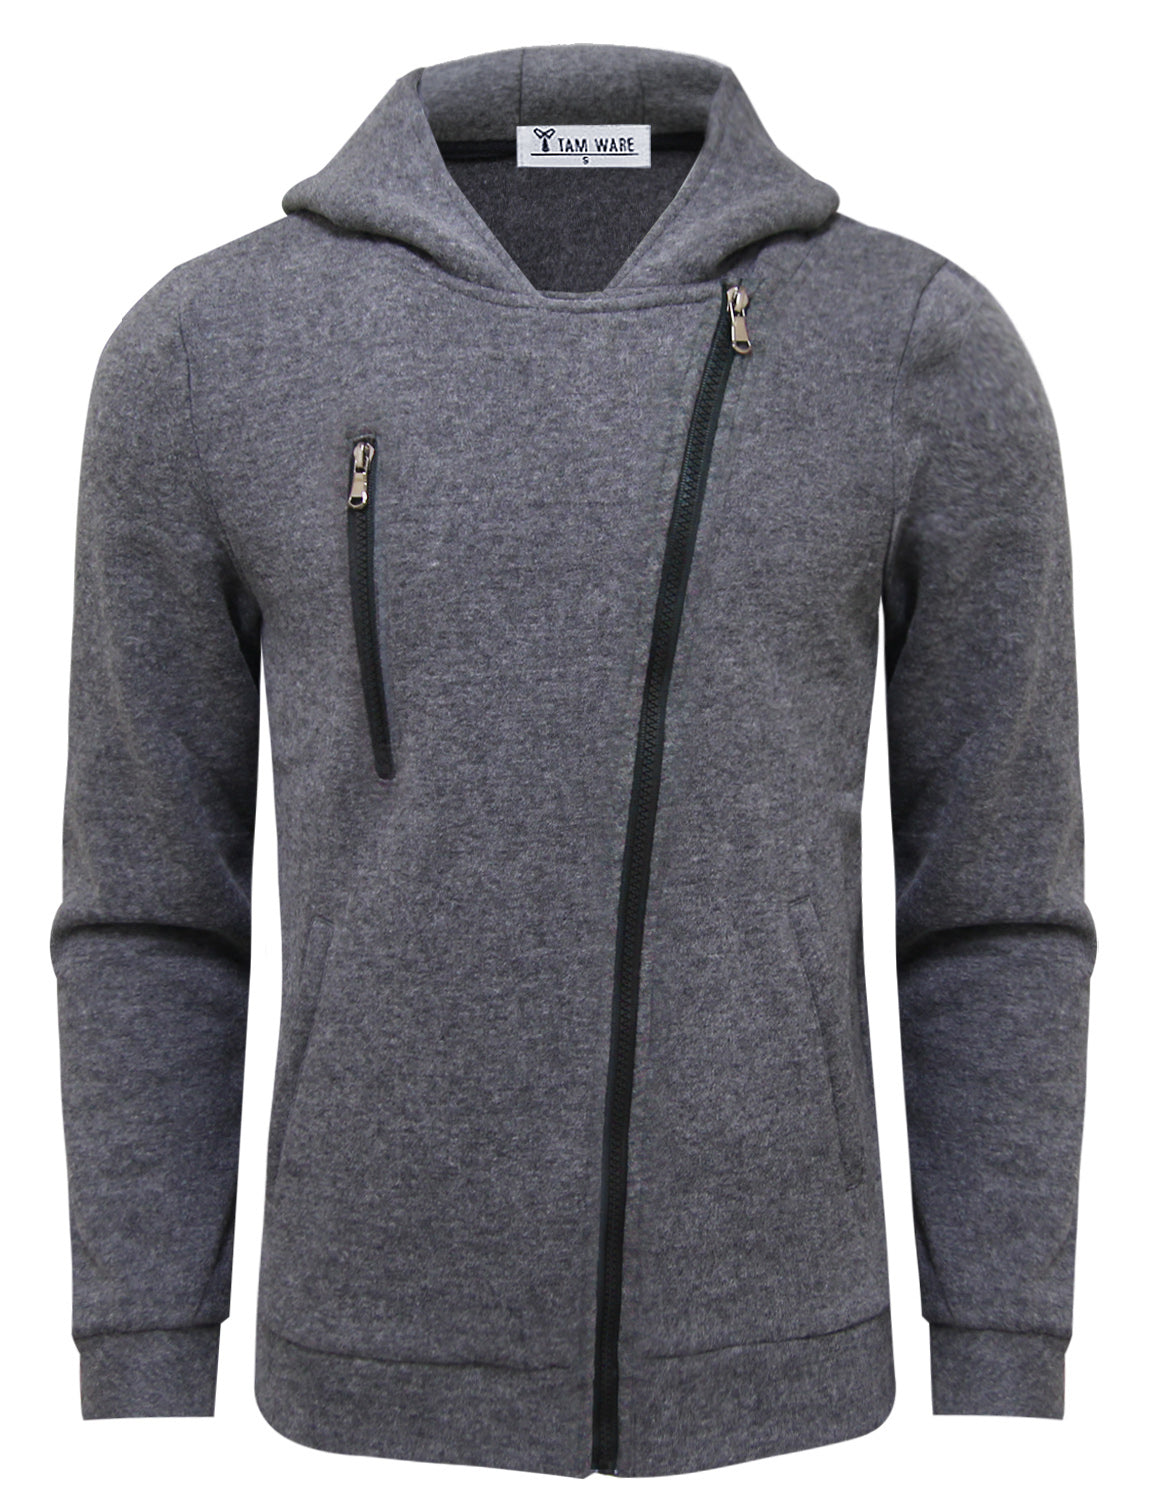 TAM WARE Men's Trendy Asymmetrical Zip Hoodie Jacket